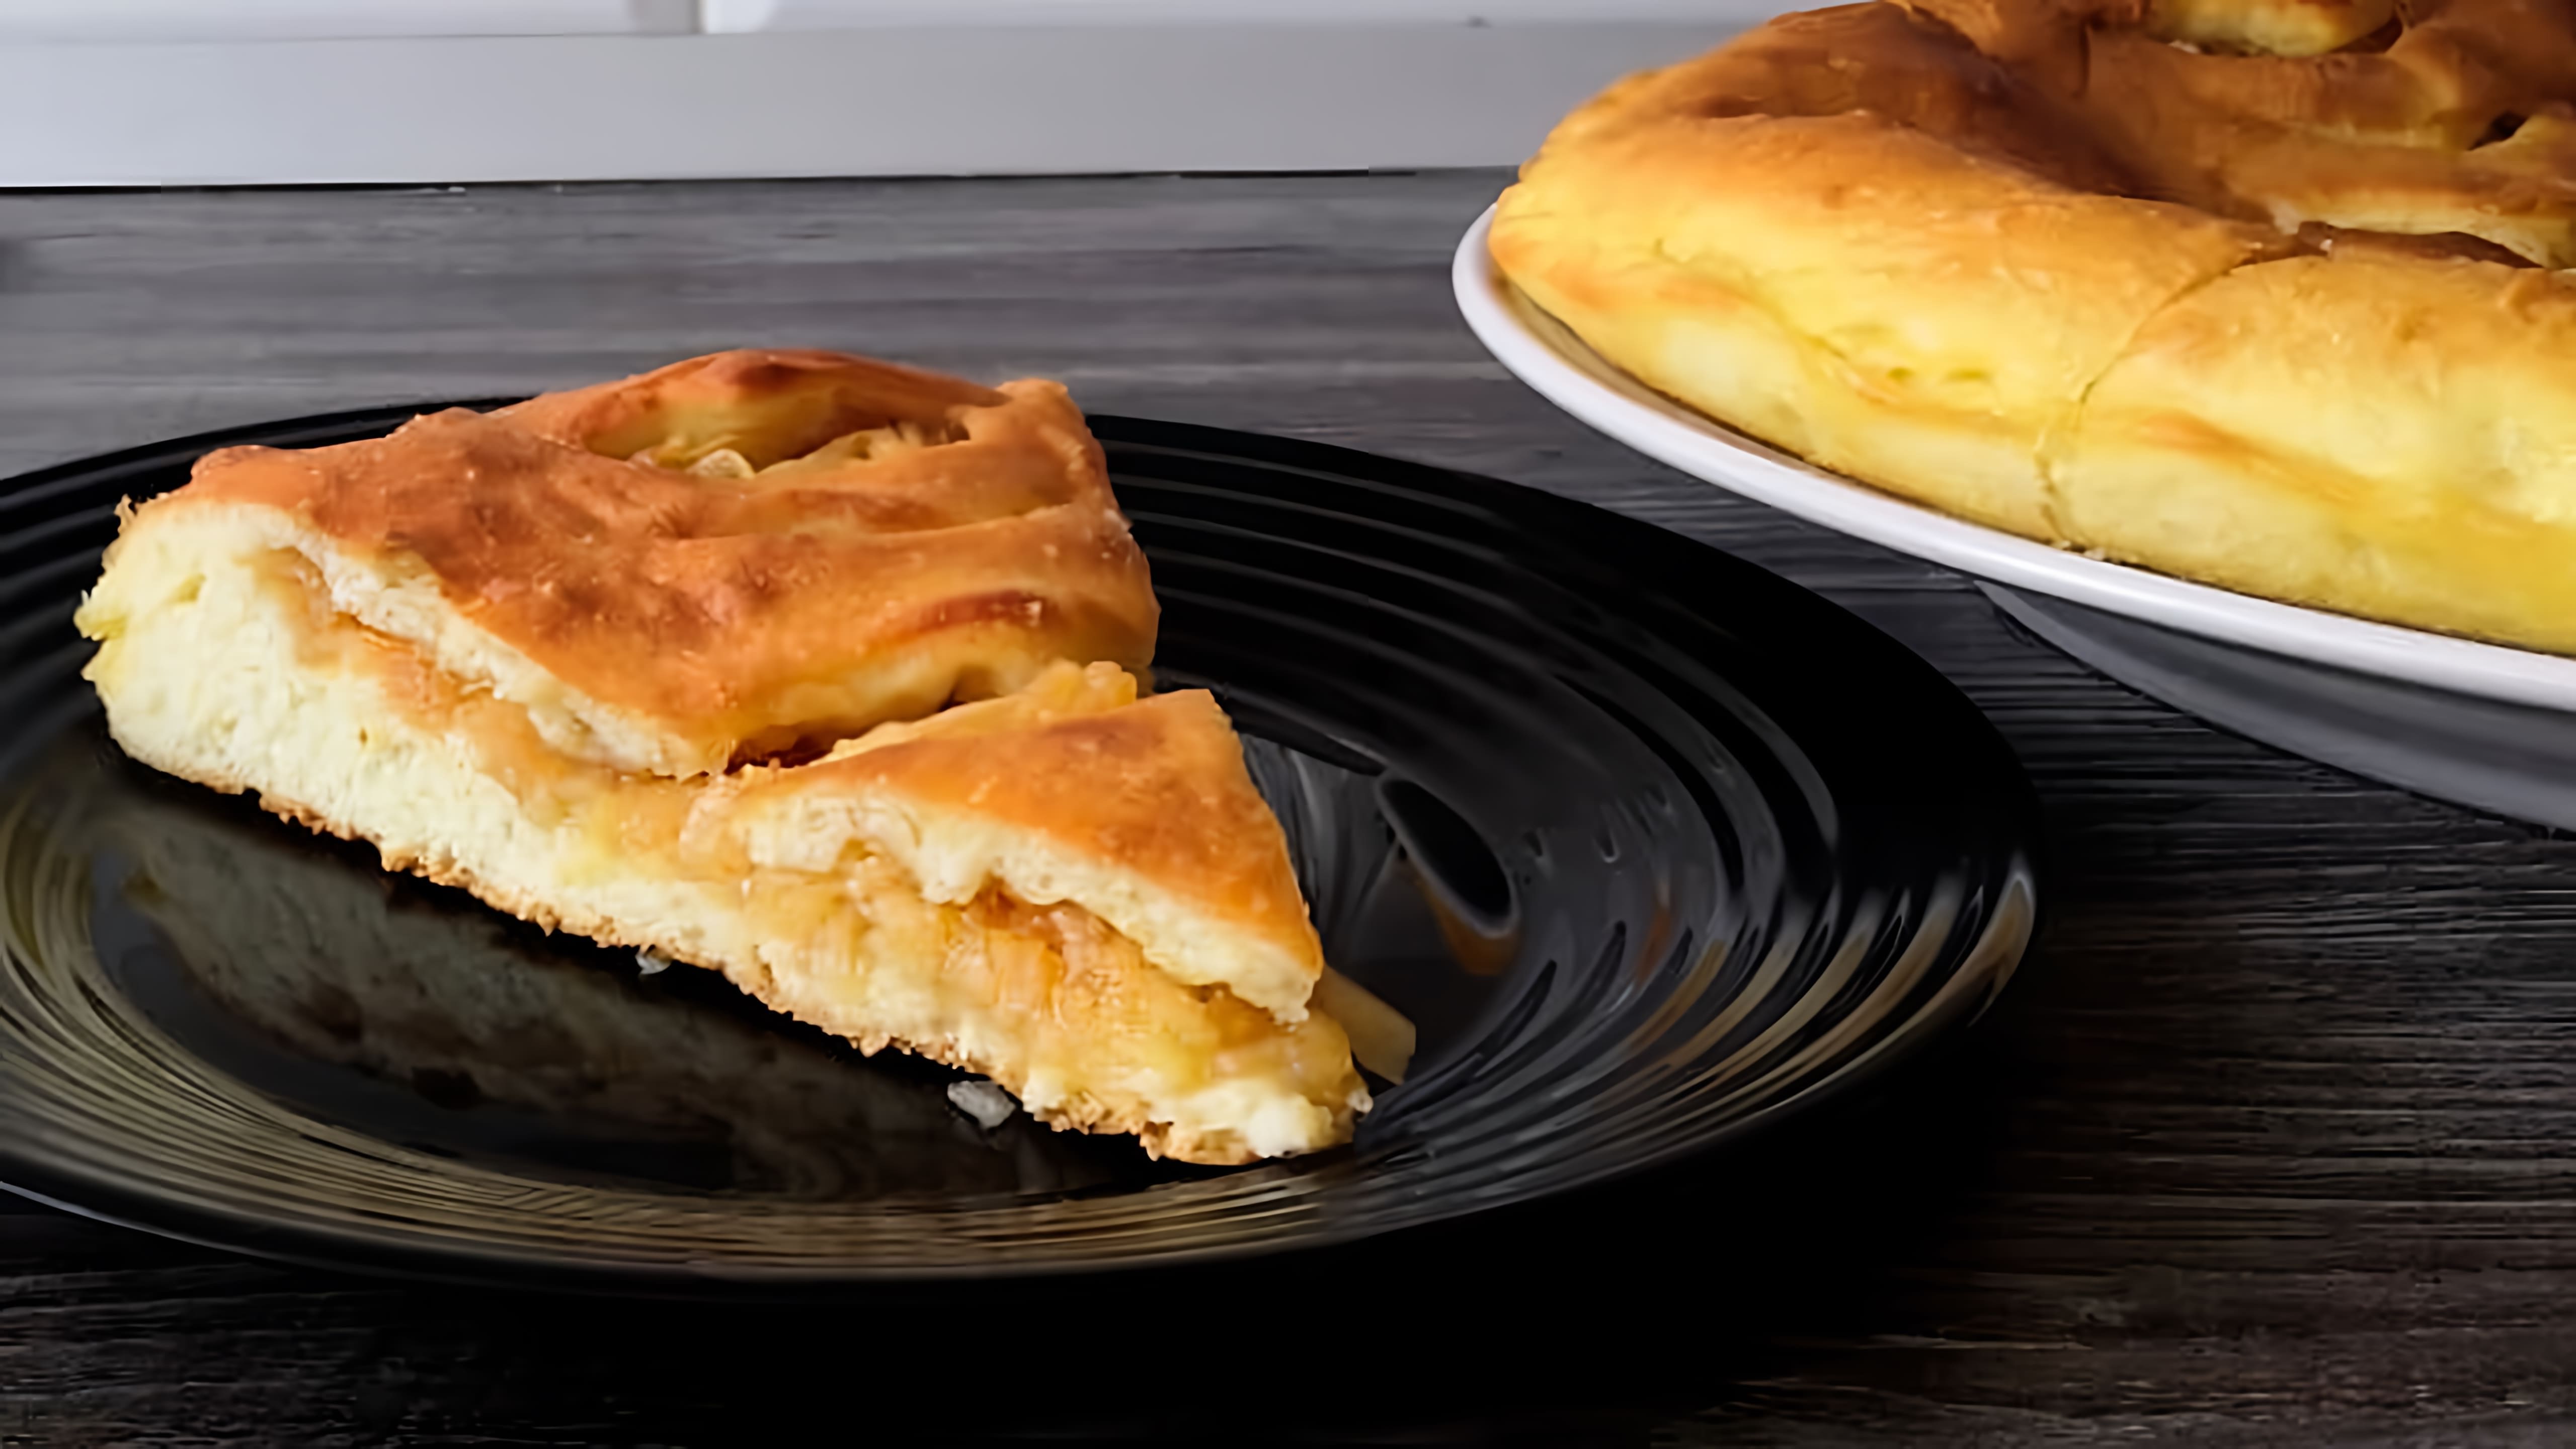 Осетинский пирог с яблоками - это вкуснейший пирог, который готовится по традиционному рецепту